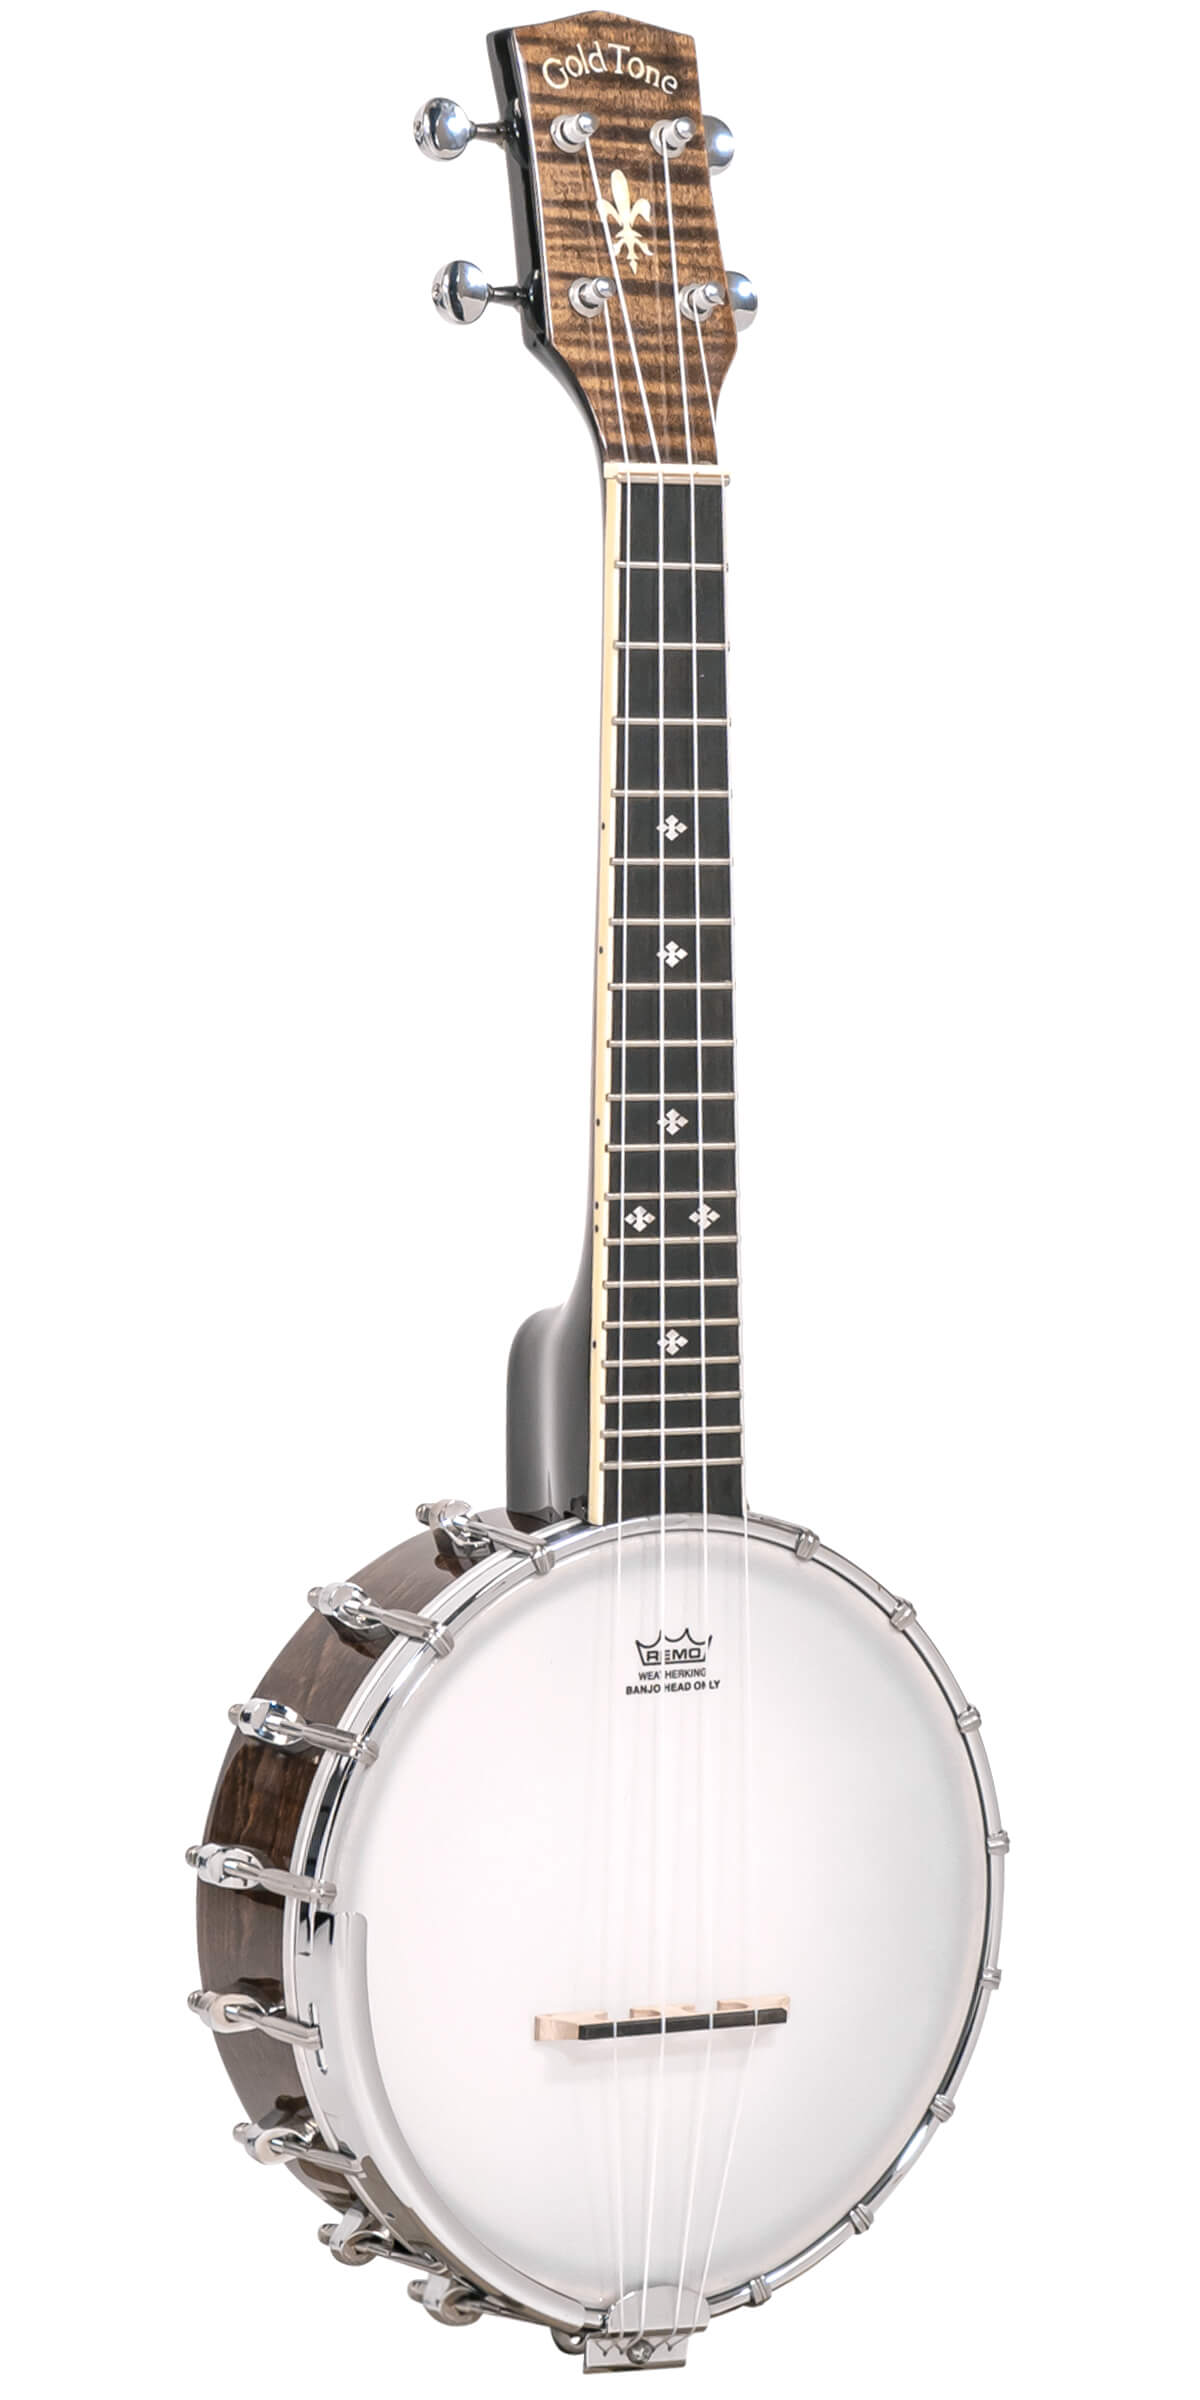 Lime frettes pour guitare, ukulélé, banjo - lime luthier acier inoxydable !